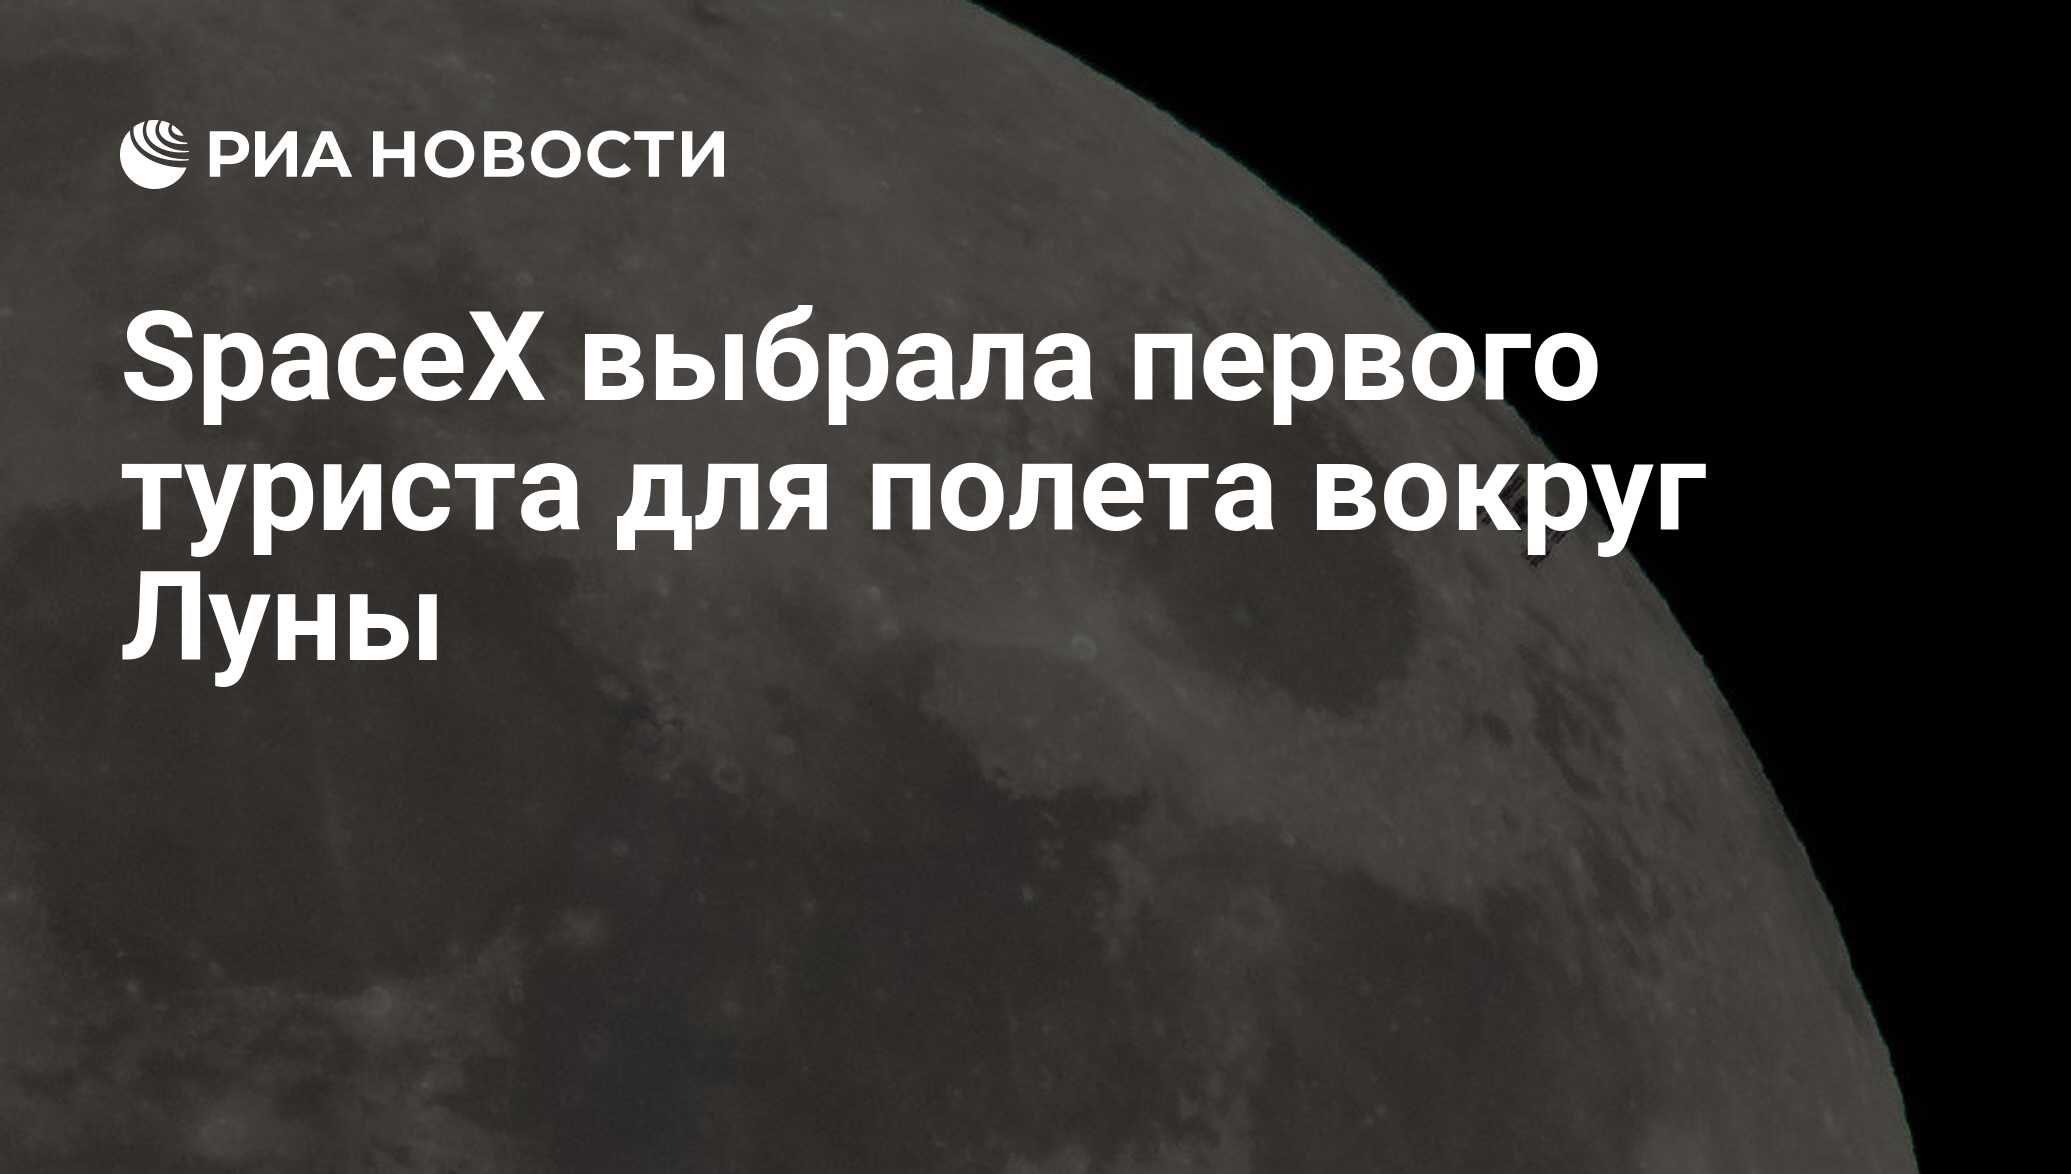 Какие животные первыми облетели вокруг луны. Запись на полёт вокруг Луны. Россия и Китай договорились о совместных работах по изучению Луны. Китай ищет новых партнеров для исследования Луны и дальнего космоса.